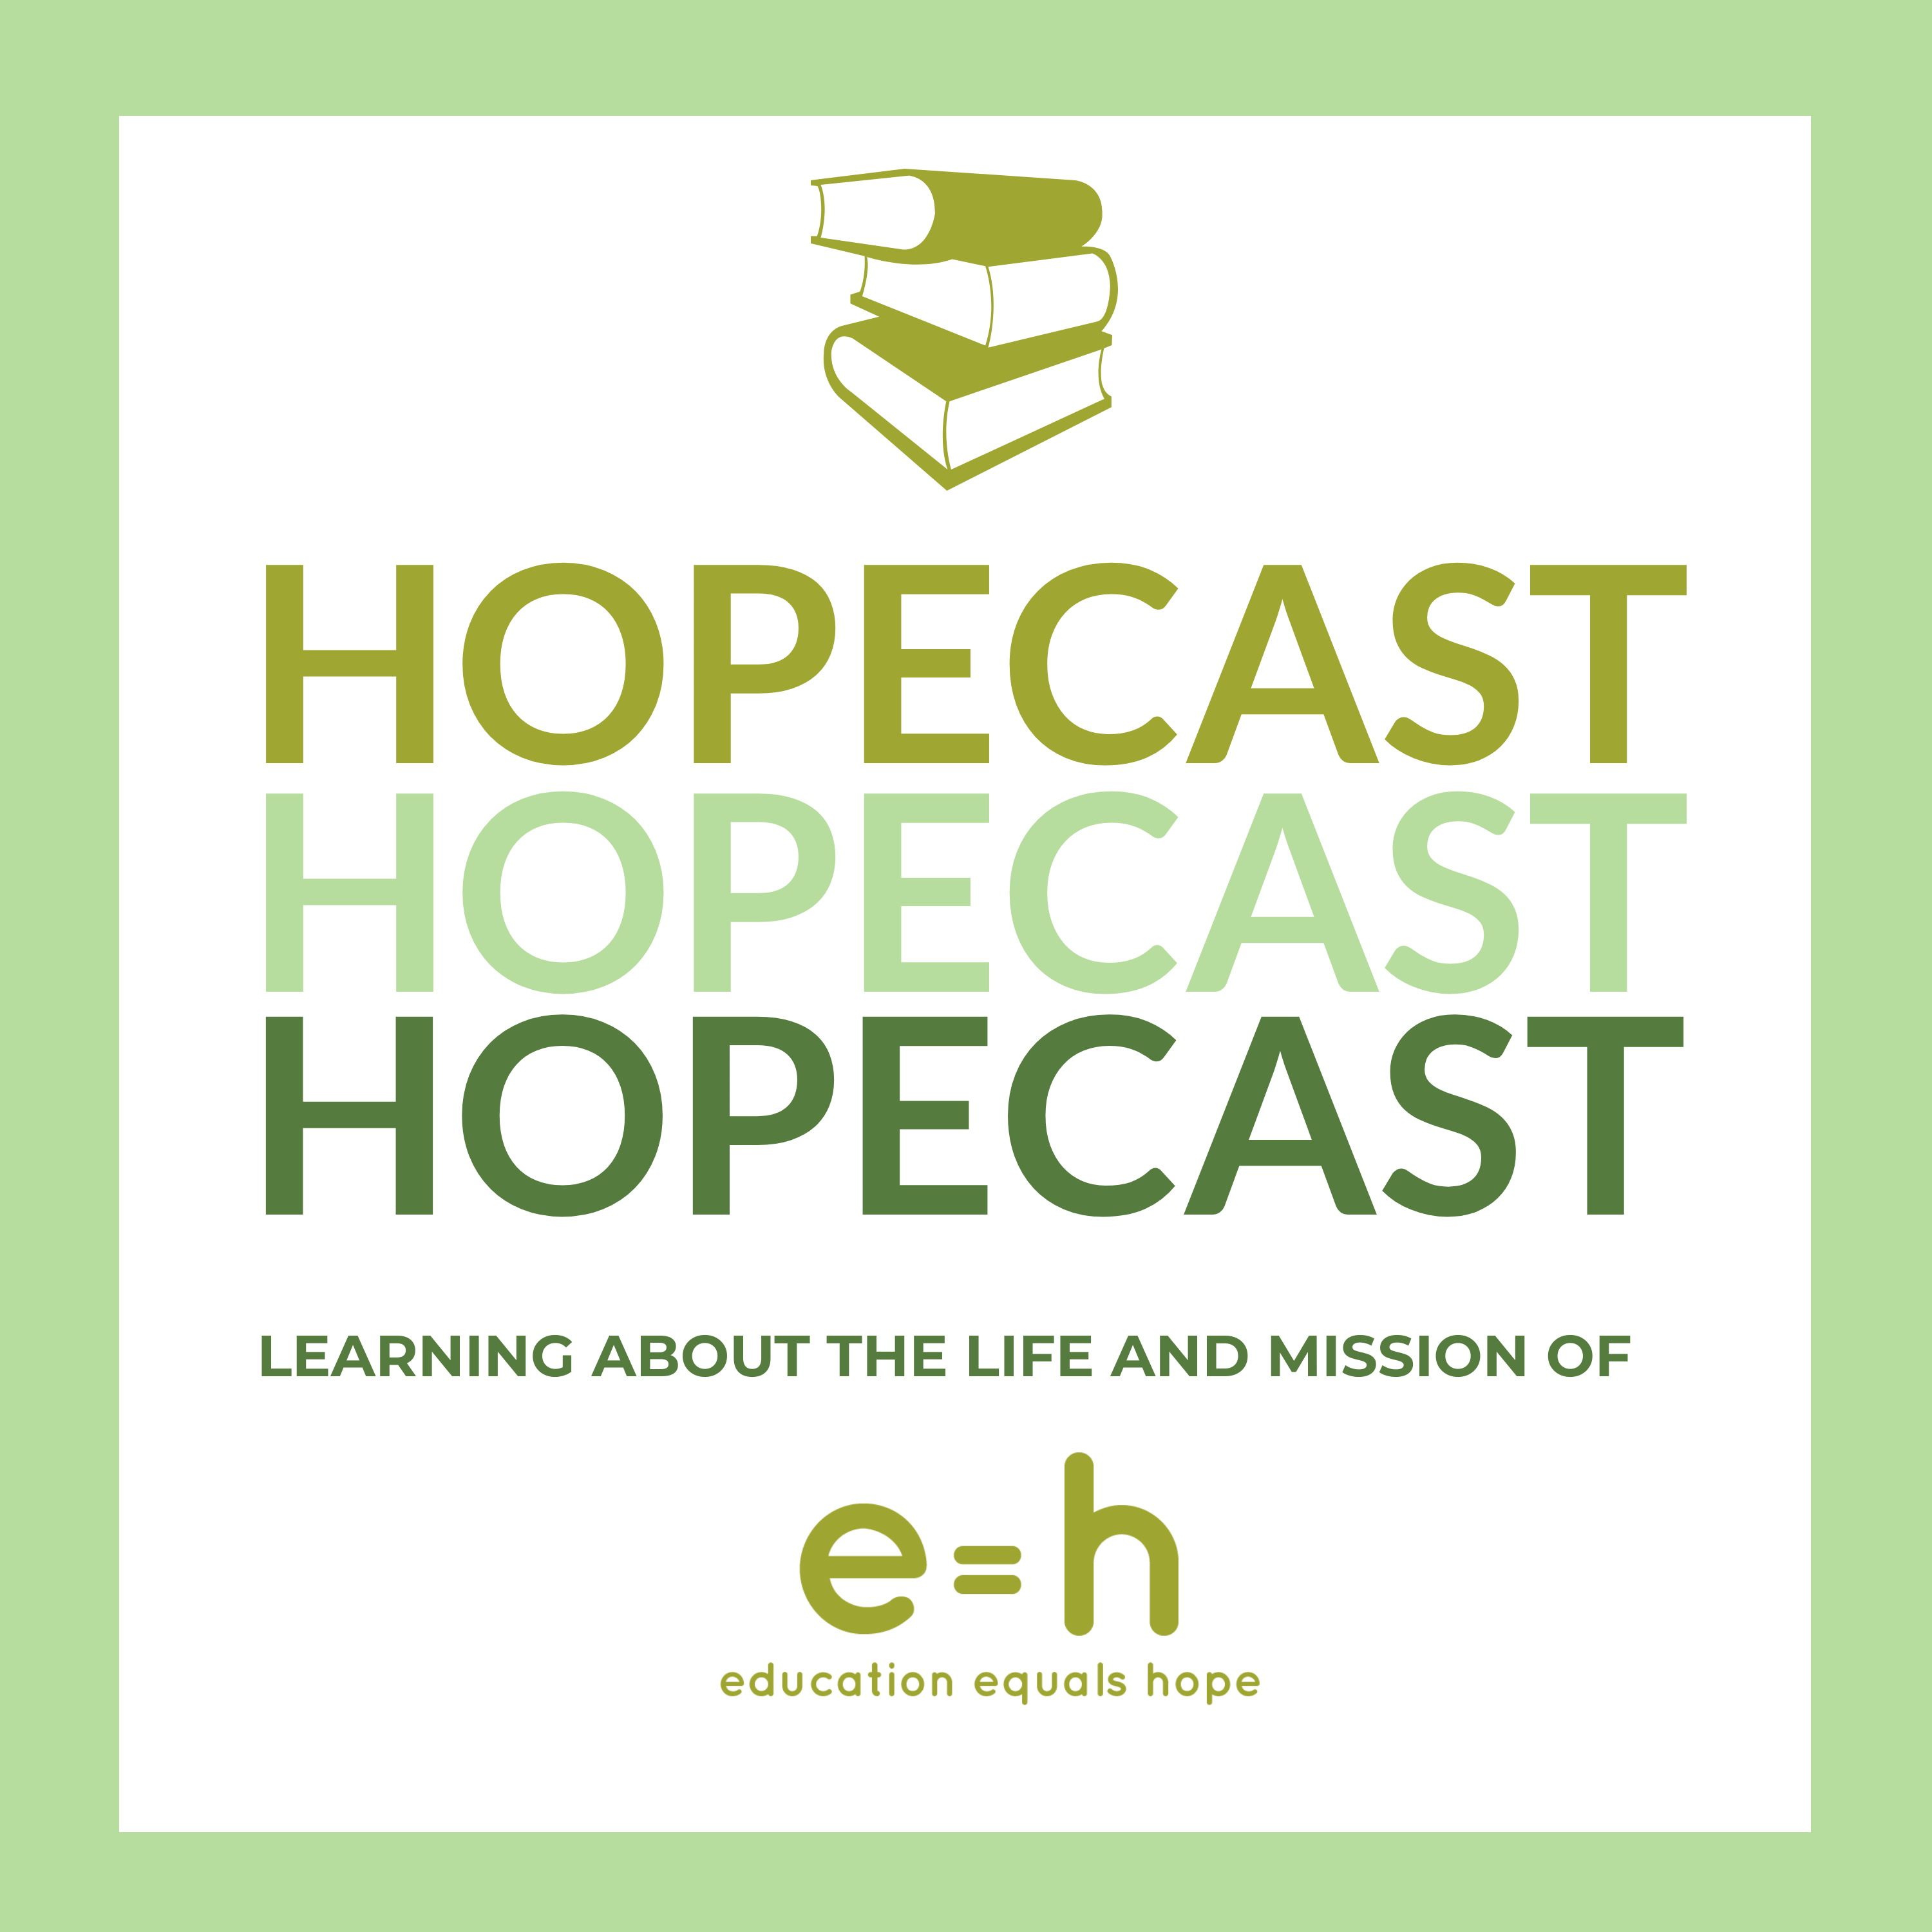 e=h Hopecast